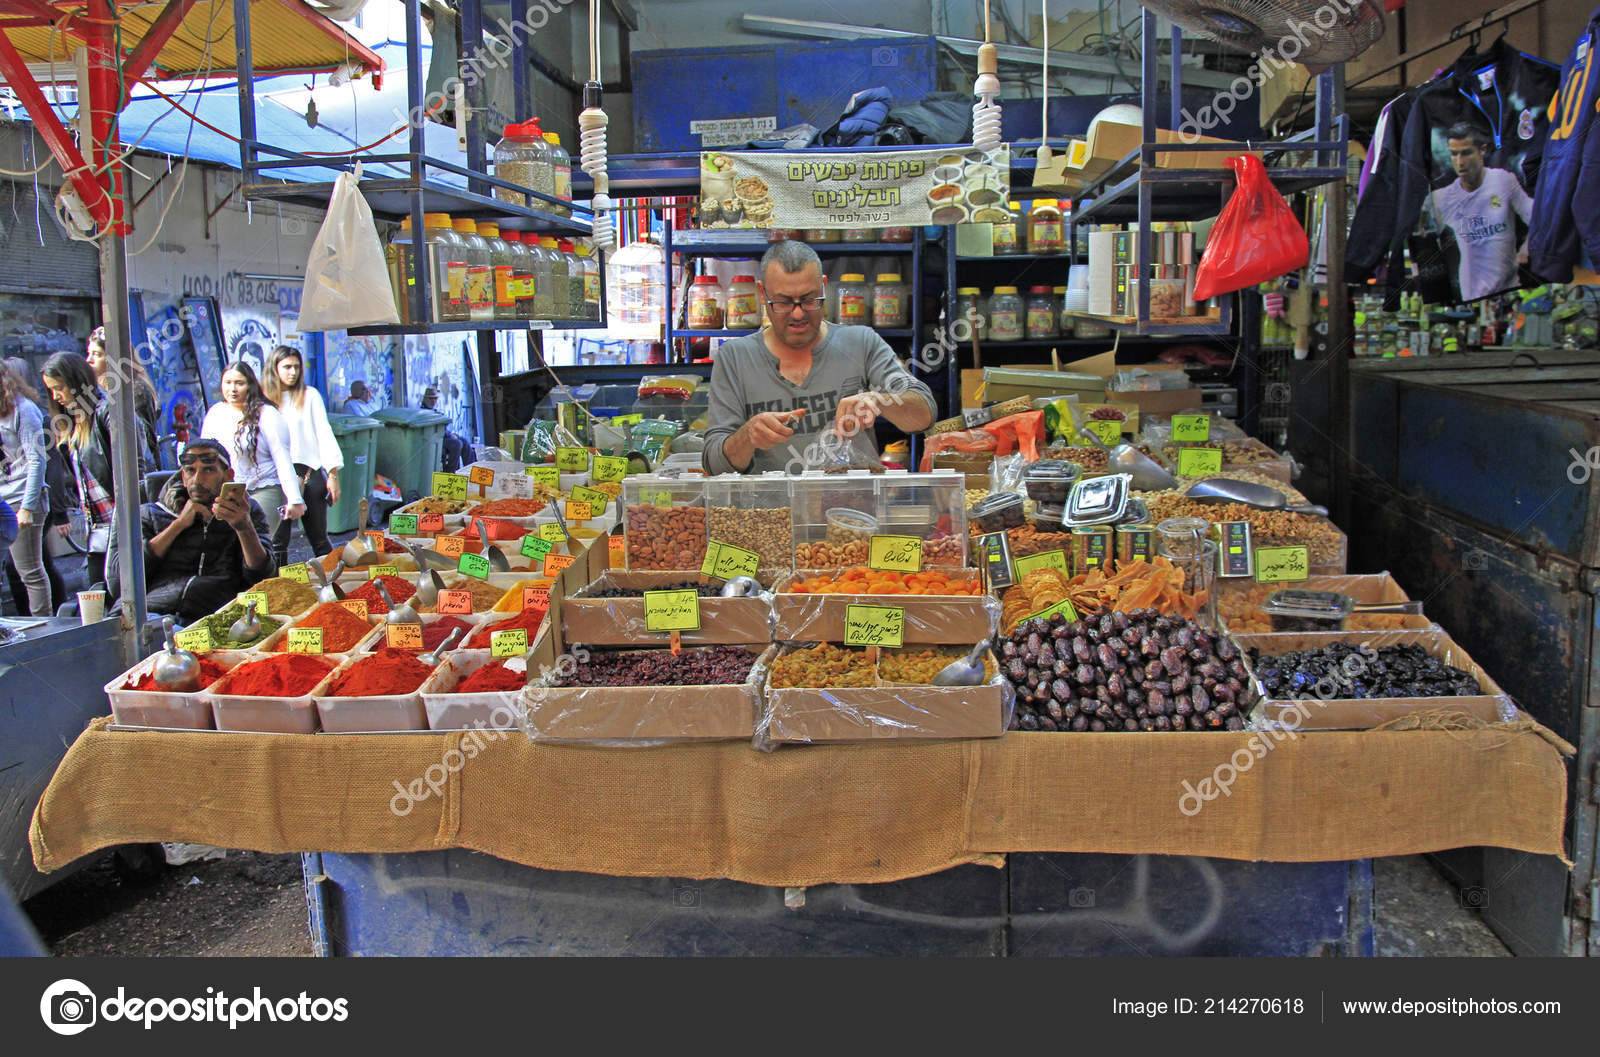 Цены в израиле 2021 в магазинах и ресторанах. стоимость продуктов и товаров в магазинах и на рынках.